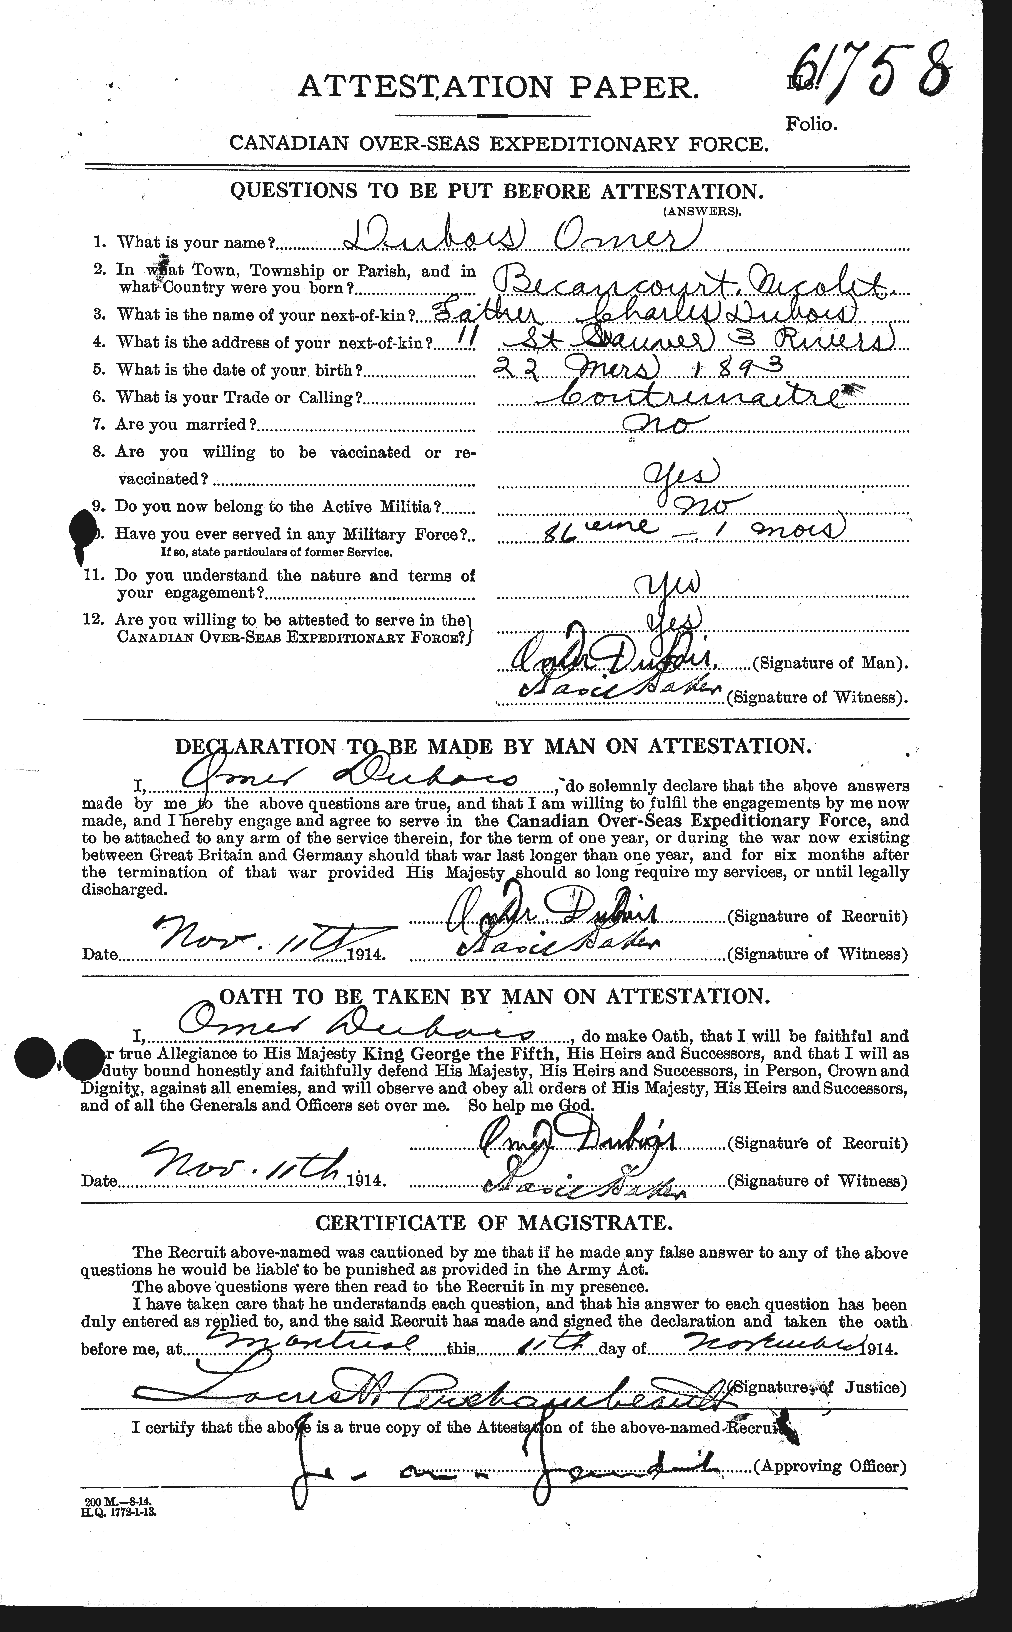 Dossiers du Personnel de la Première Guerre mondiale - CEC 300484a